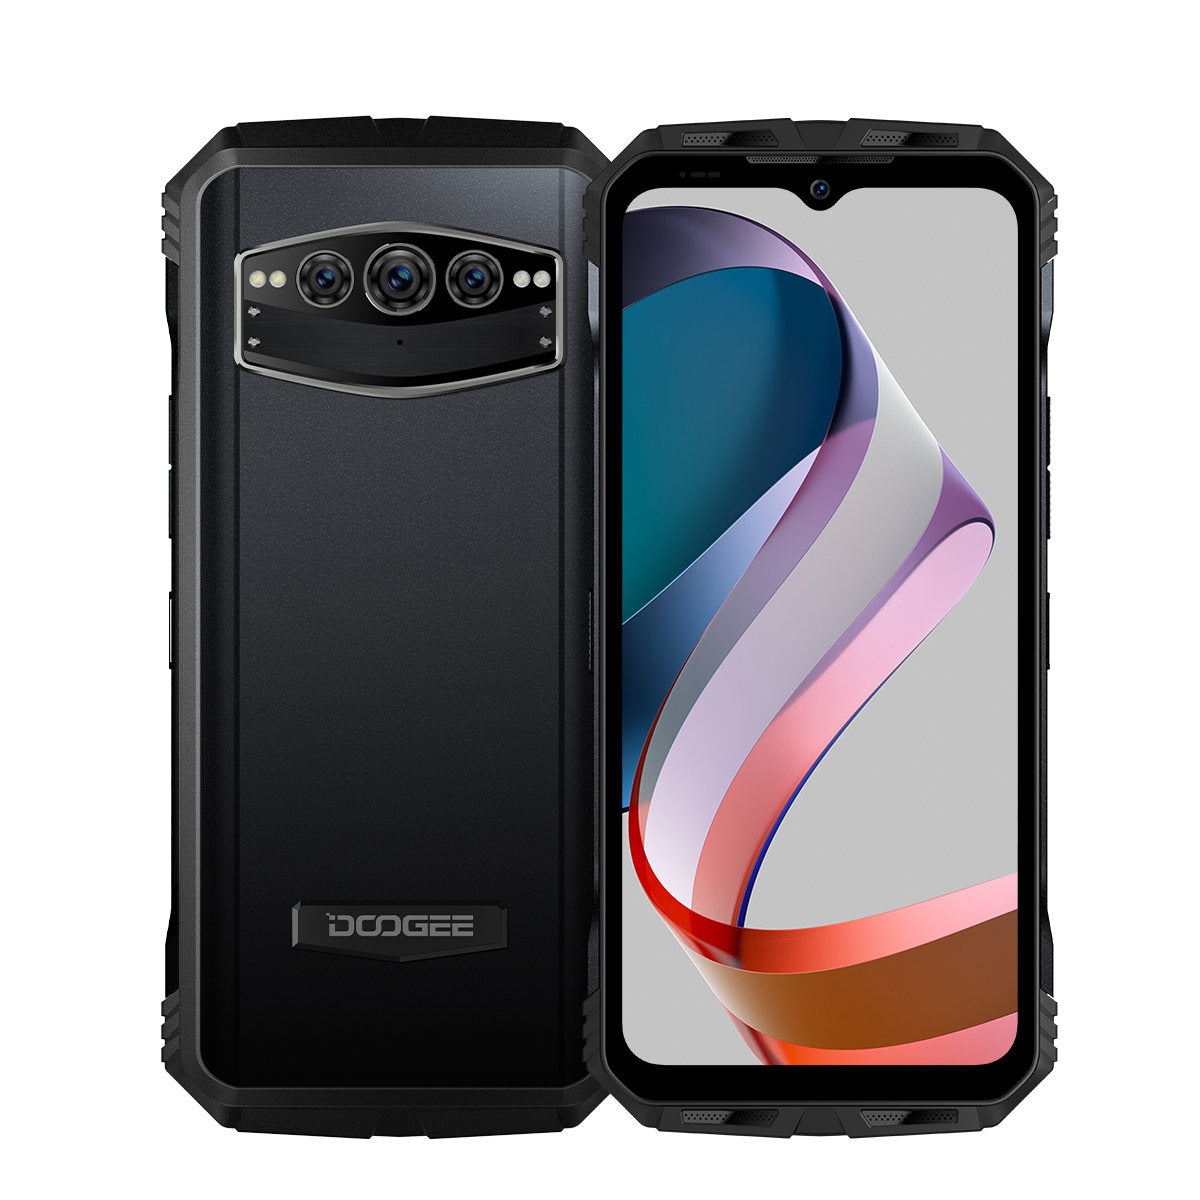 DOOGEE F3 Pro 4G, un nuevo móvil con una excelente relación calidad/precio  – Bienestar Institucional